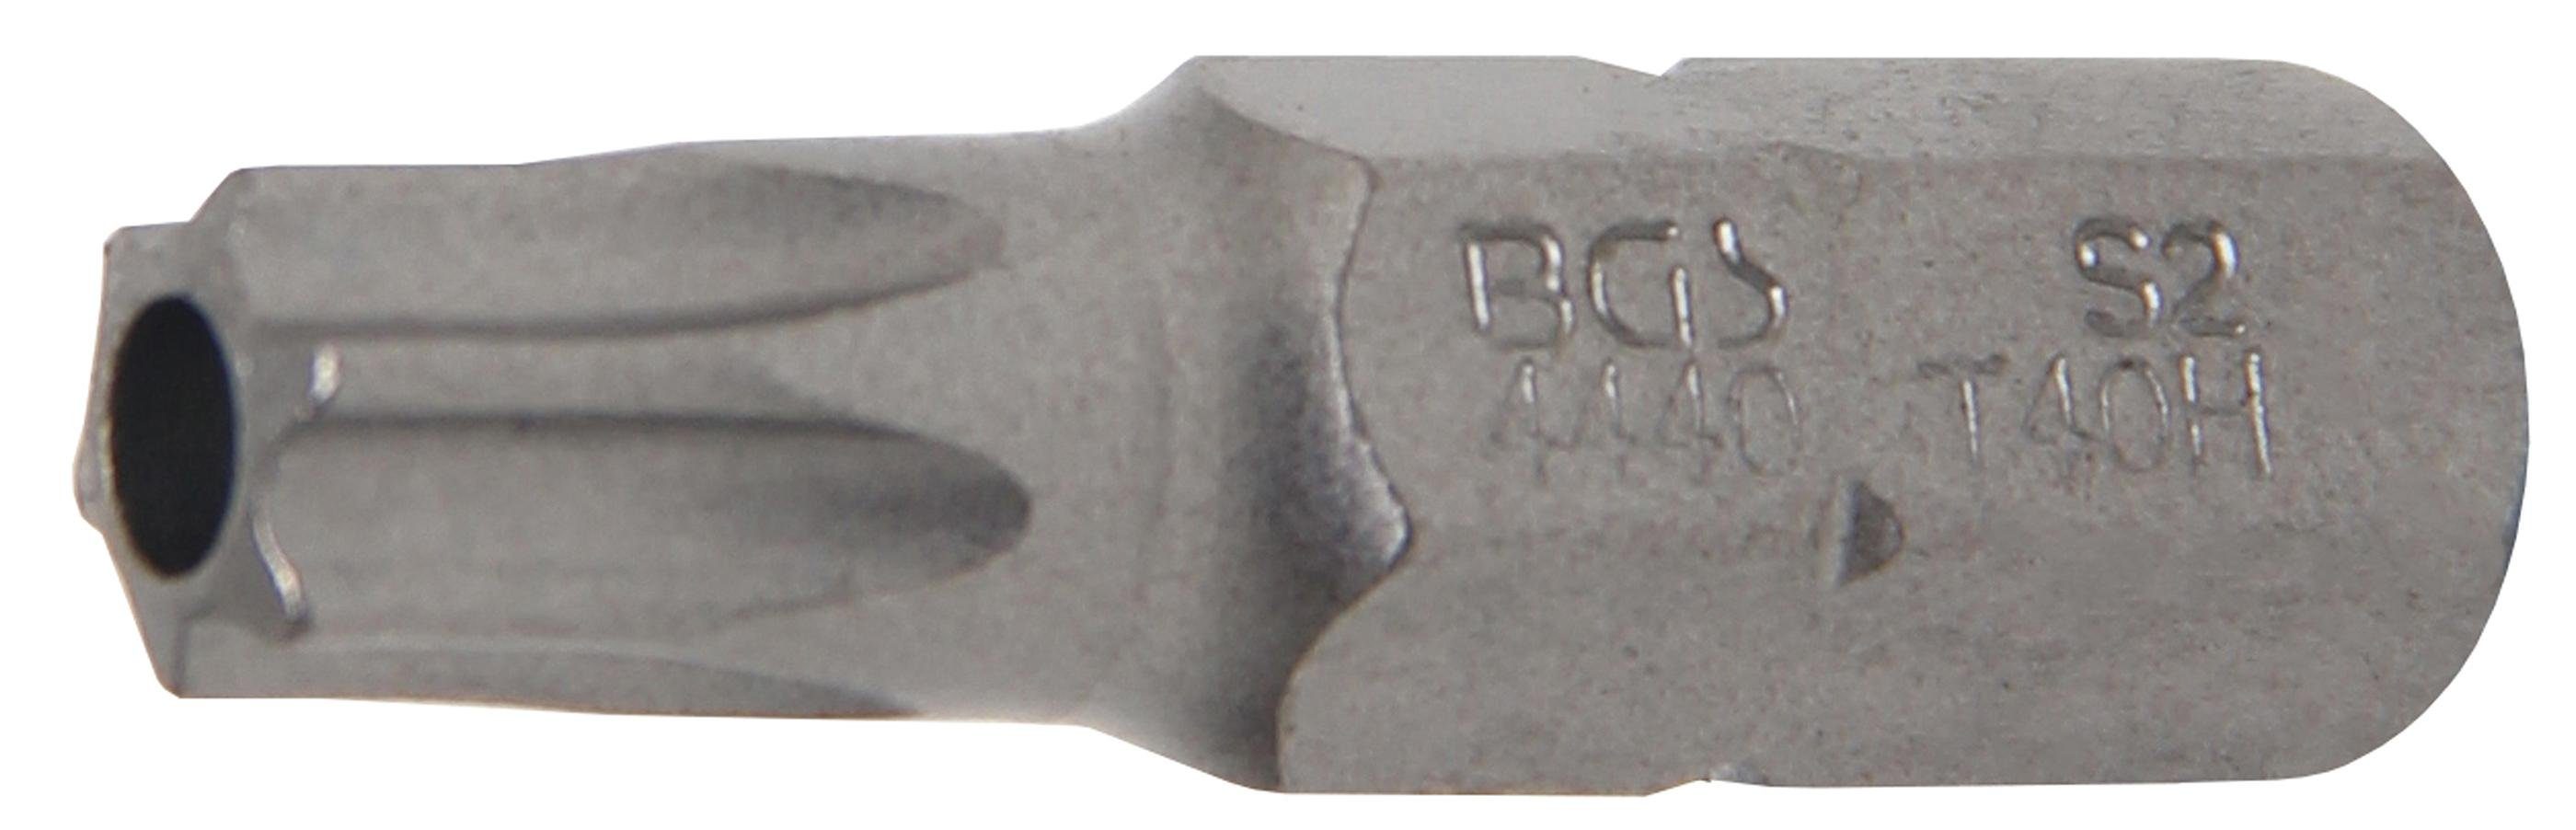 Torx) T-Profil Bohrung mm Antrieb (5/16), 8 BGS T40 Außensechskant Bit, technic mit (für Bit-Schraubendreher